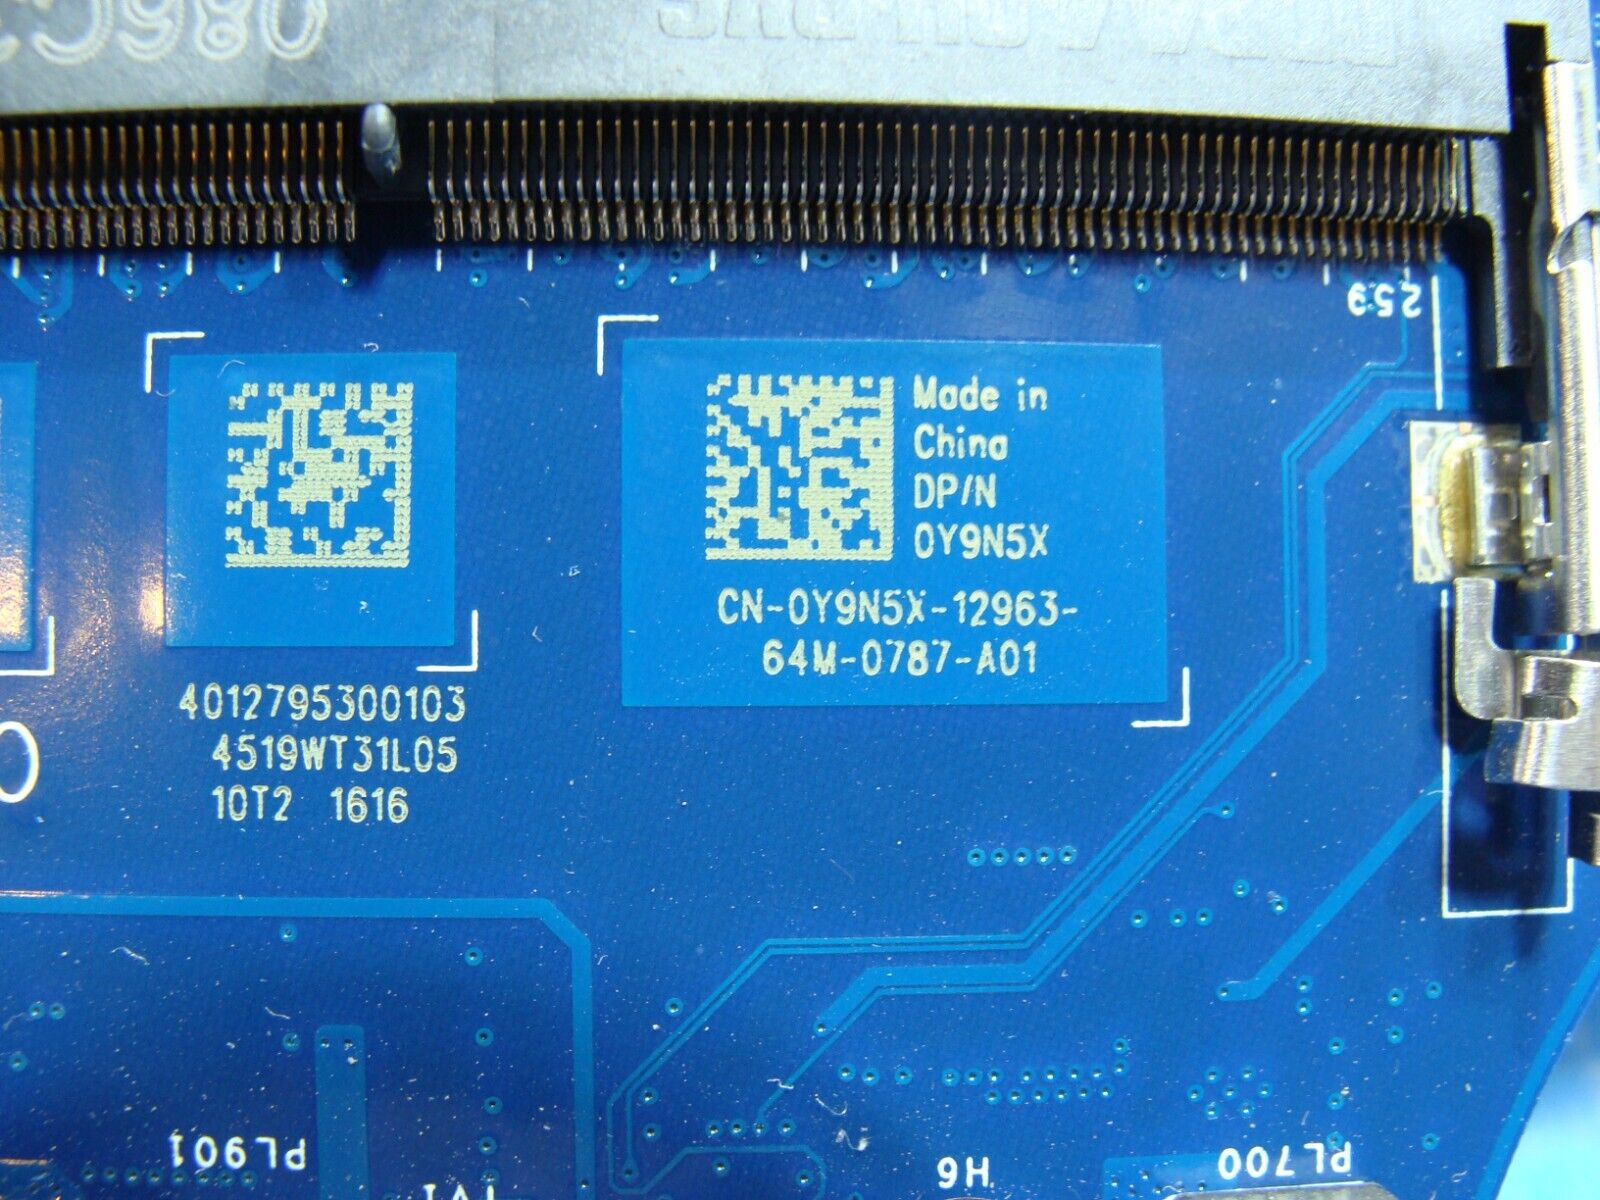 Dell XPS 15.6” 15 9550 OEM Intel i7-6700HQ 2.6GHz GTX 960M 2GB Motherboard Y9N5X